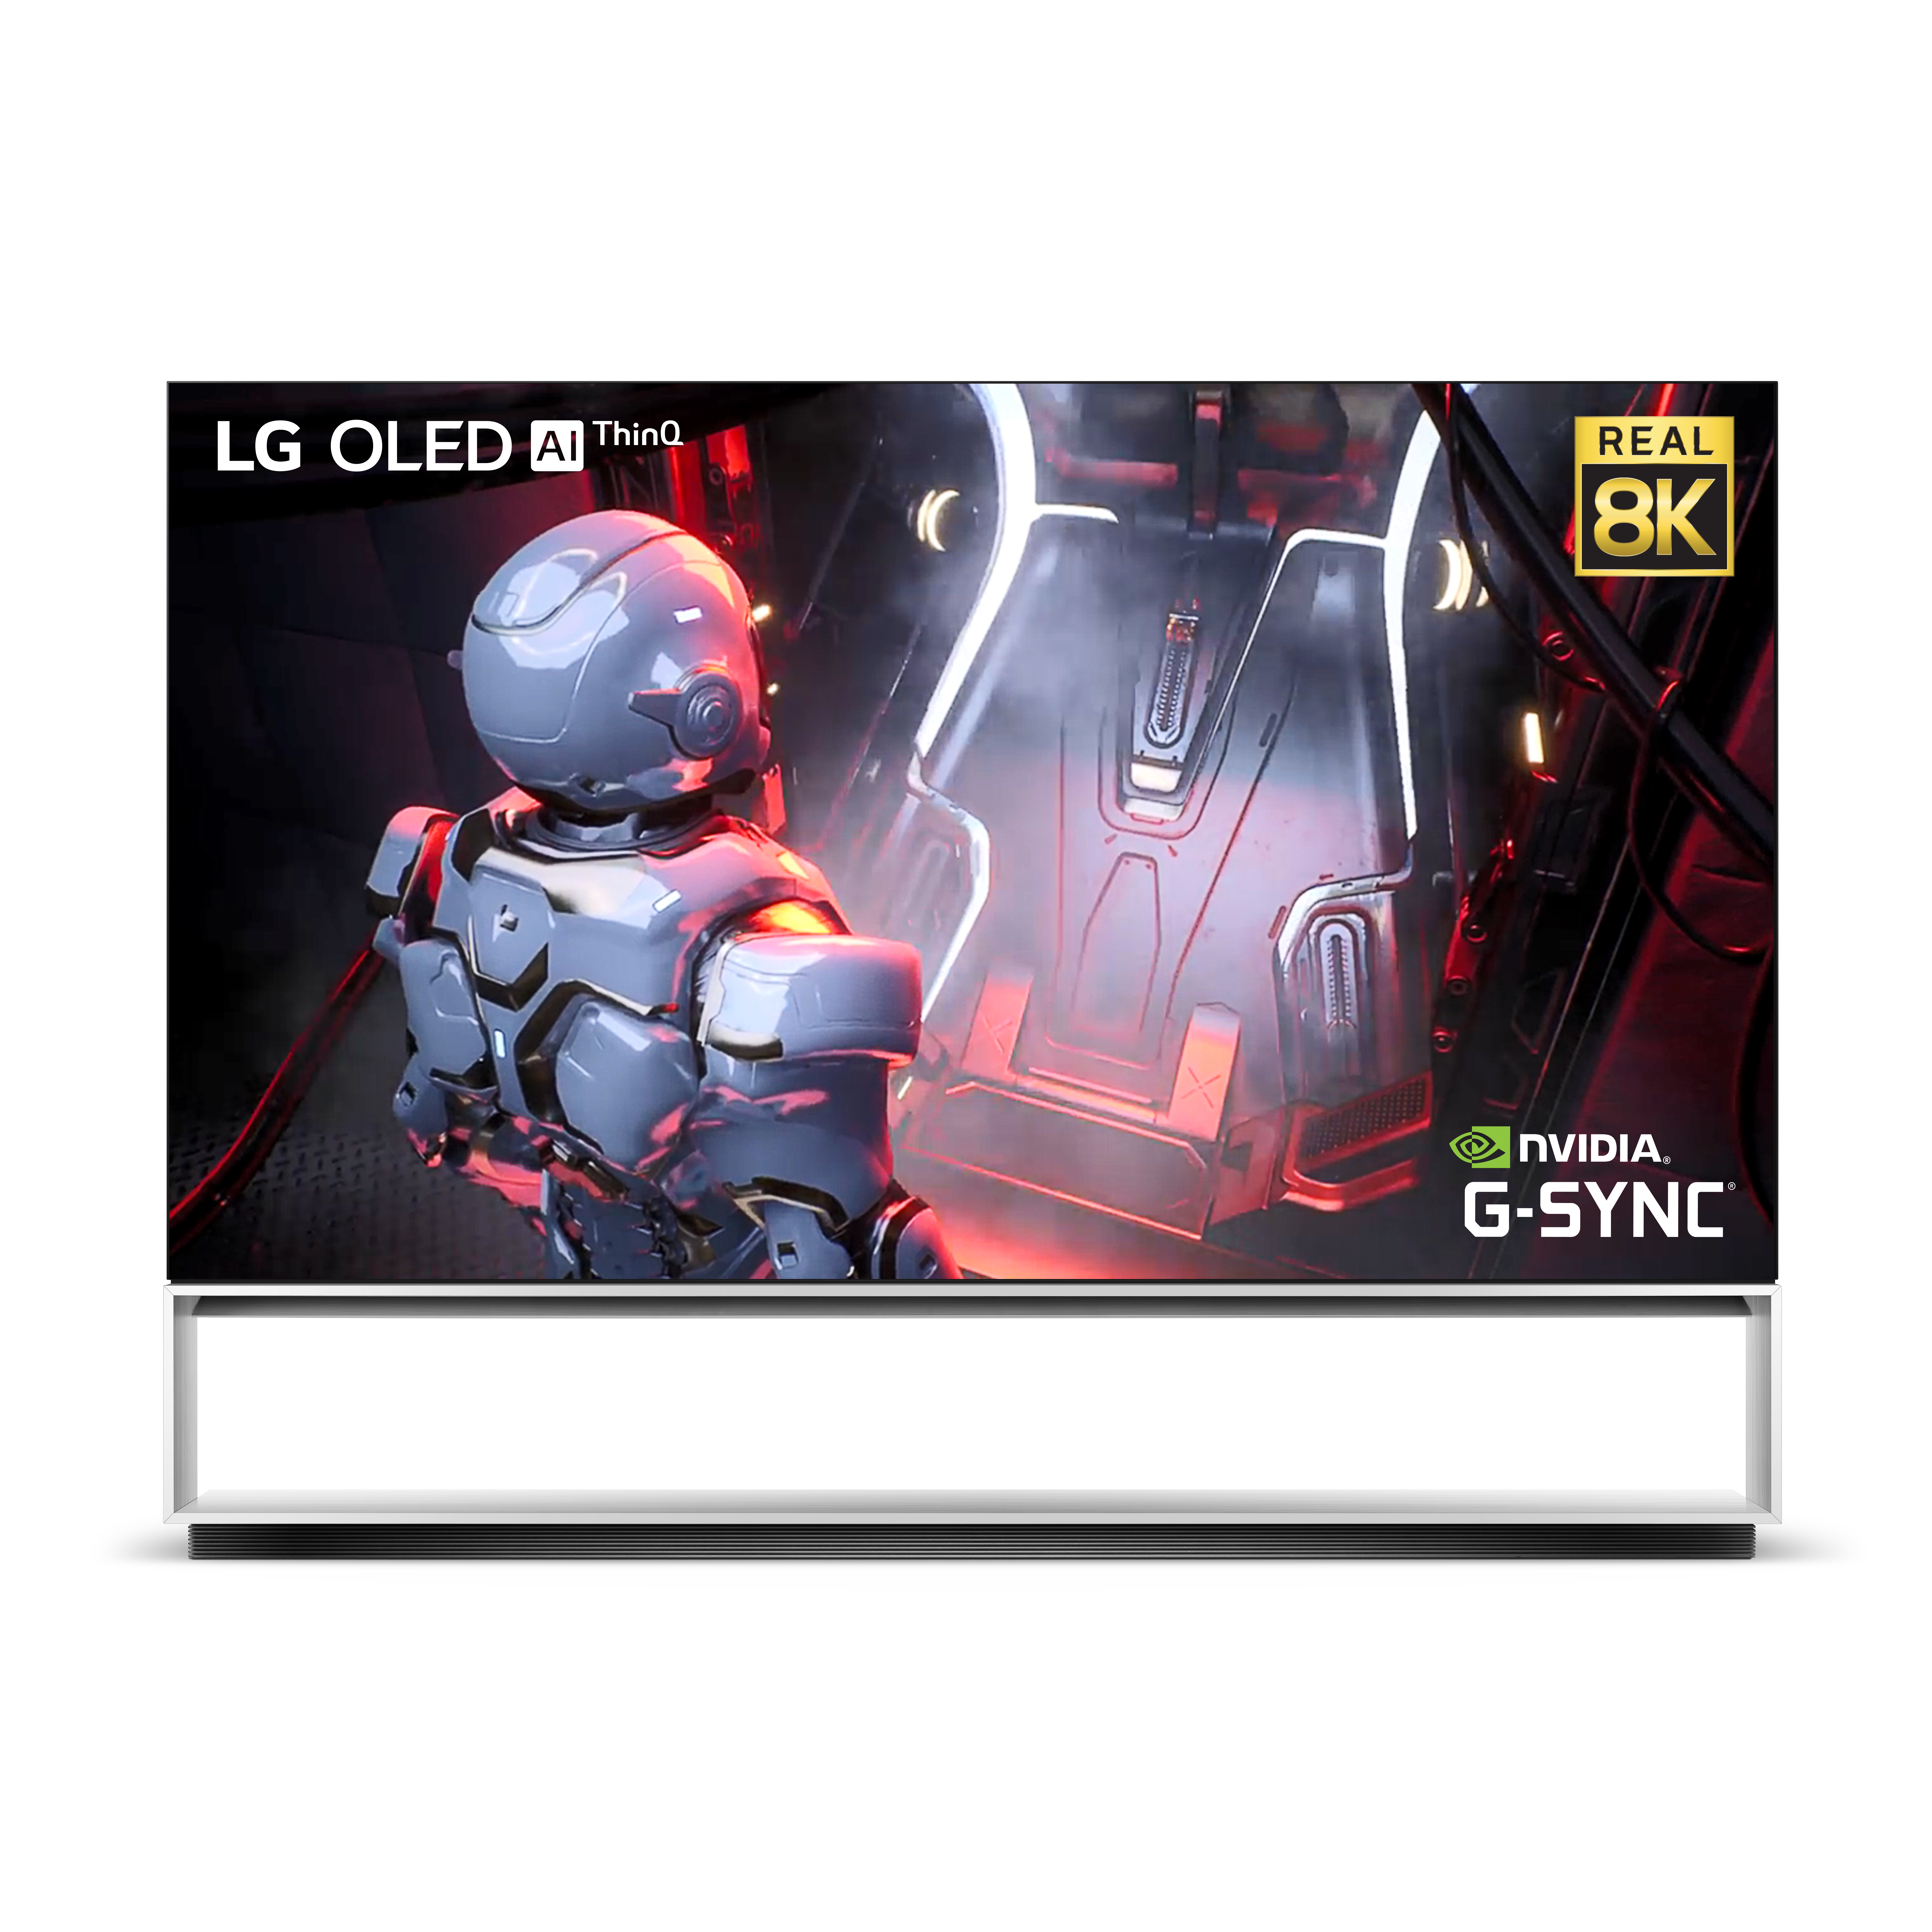 LG incorpora un nuevo procesador en los televisores LG OLED 8K